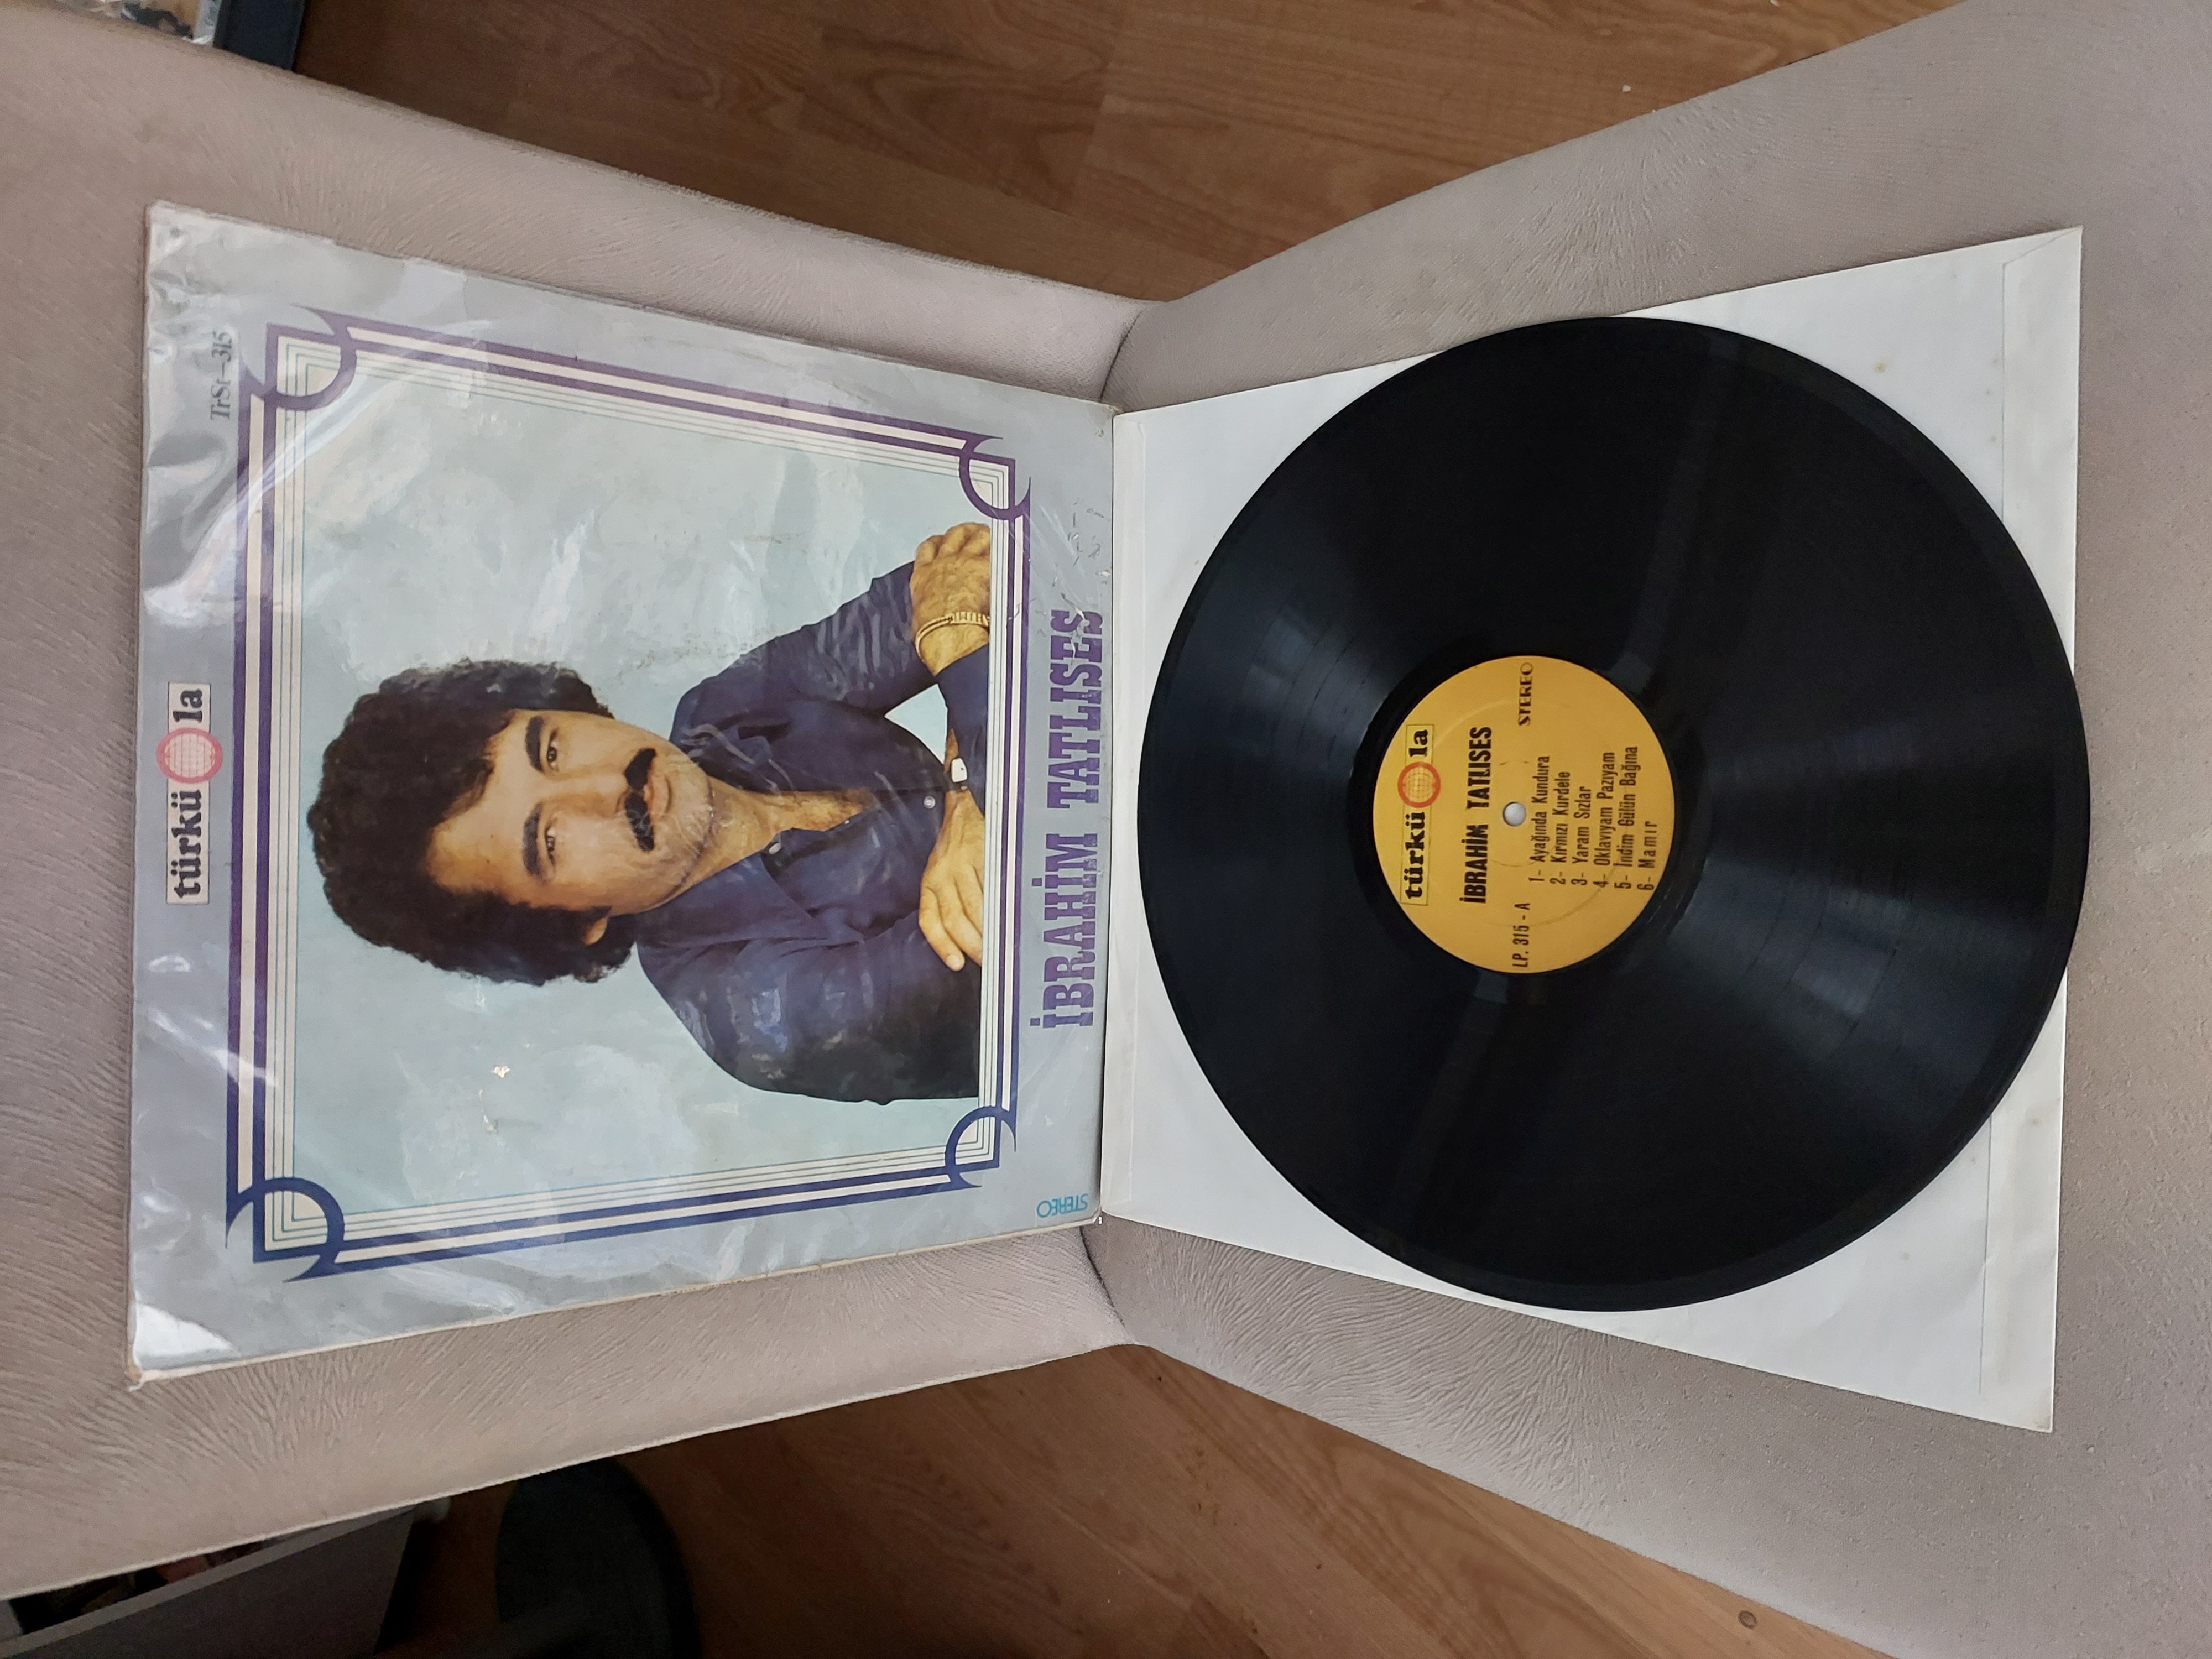 İbrahim Tatlıses – Ayağında Kundura - 1977 Türkiye Basım - LP Plak Albüm